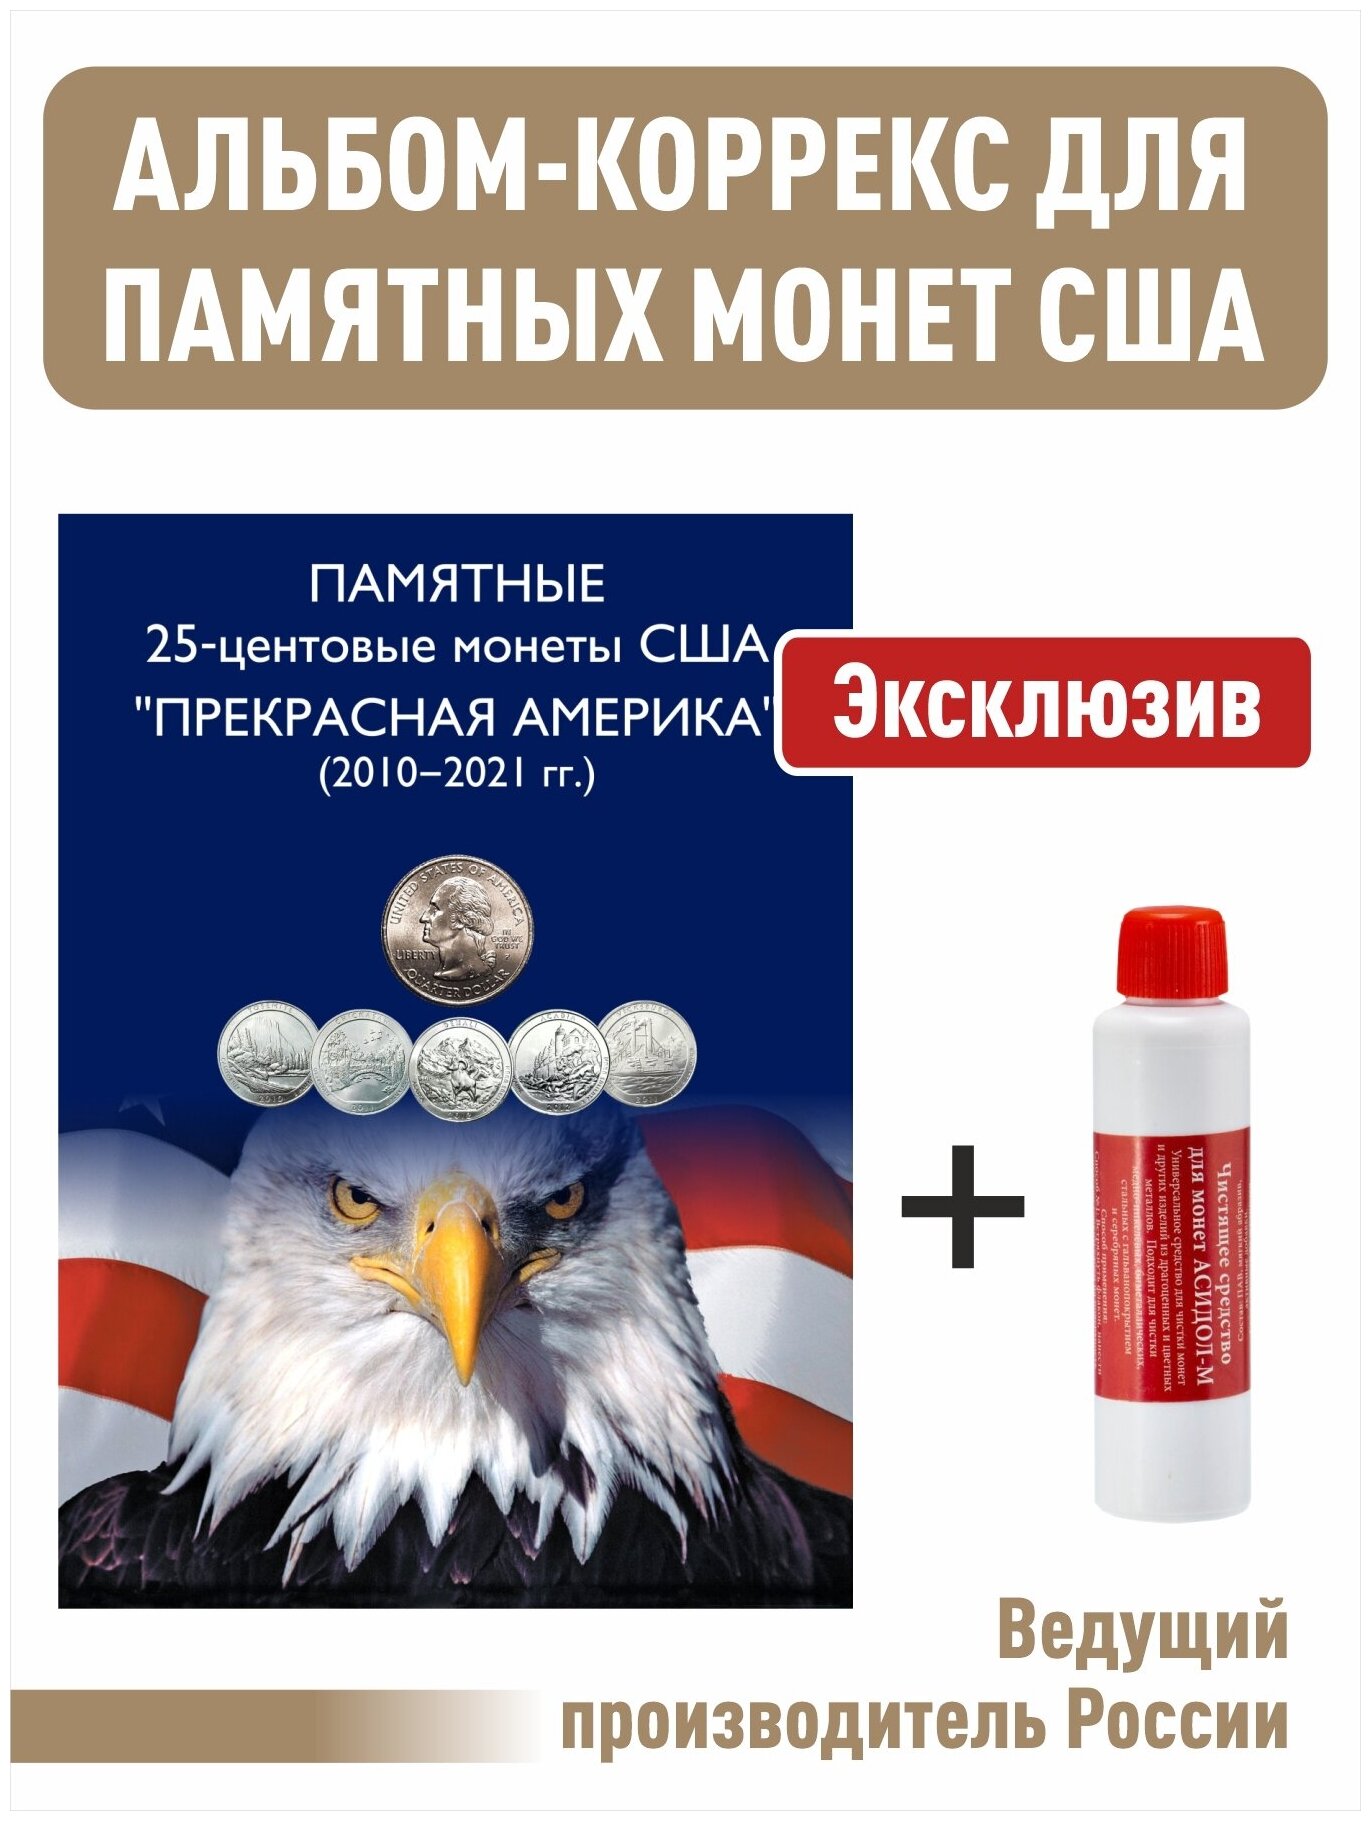 Альбом-коррекс для 25-центовых монет США (2010-2021г.) Прекрасная Америка + Асидол (чистящее средство)